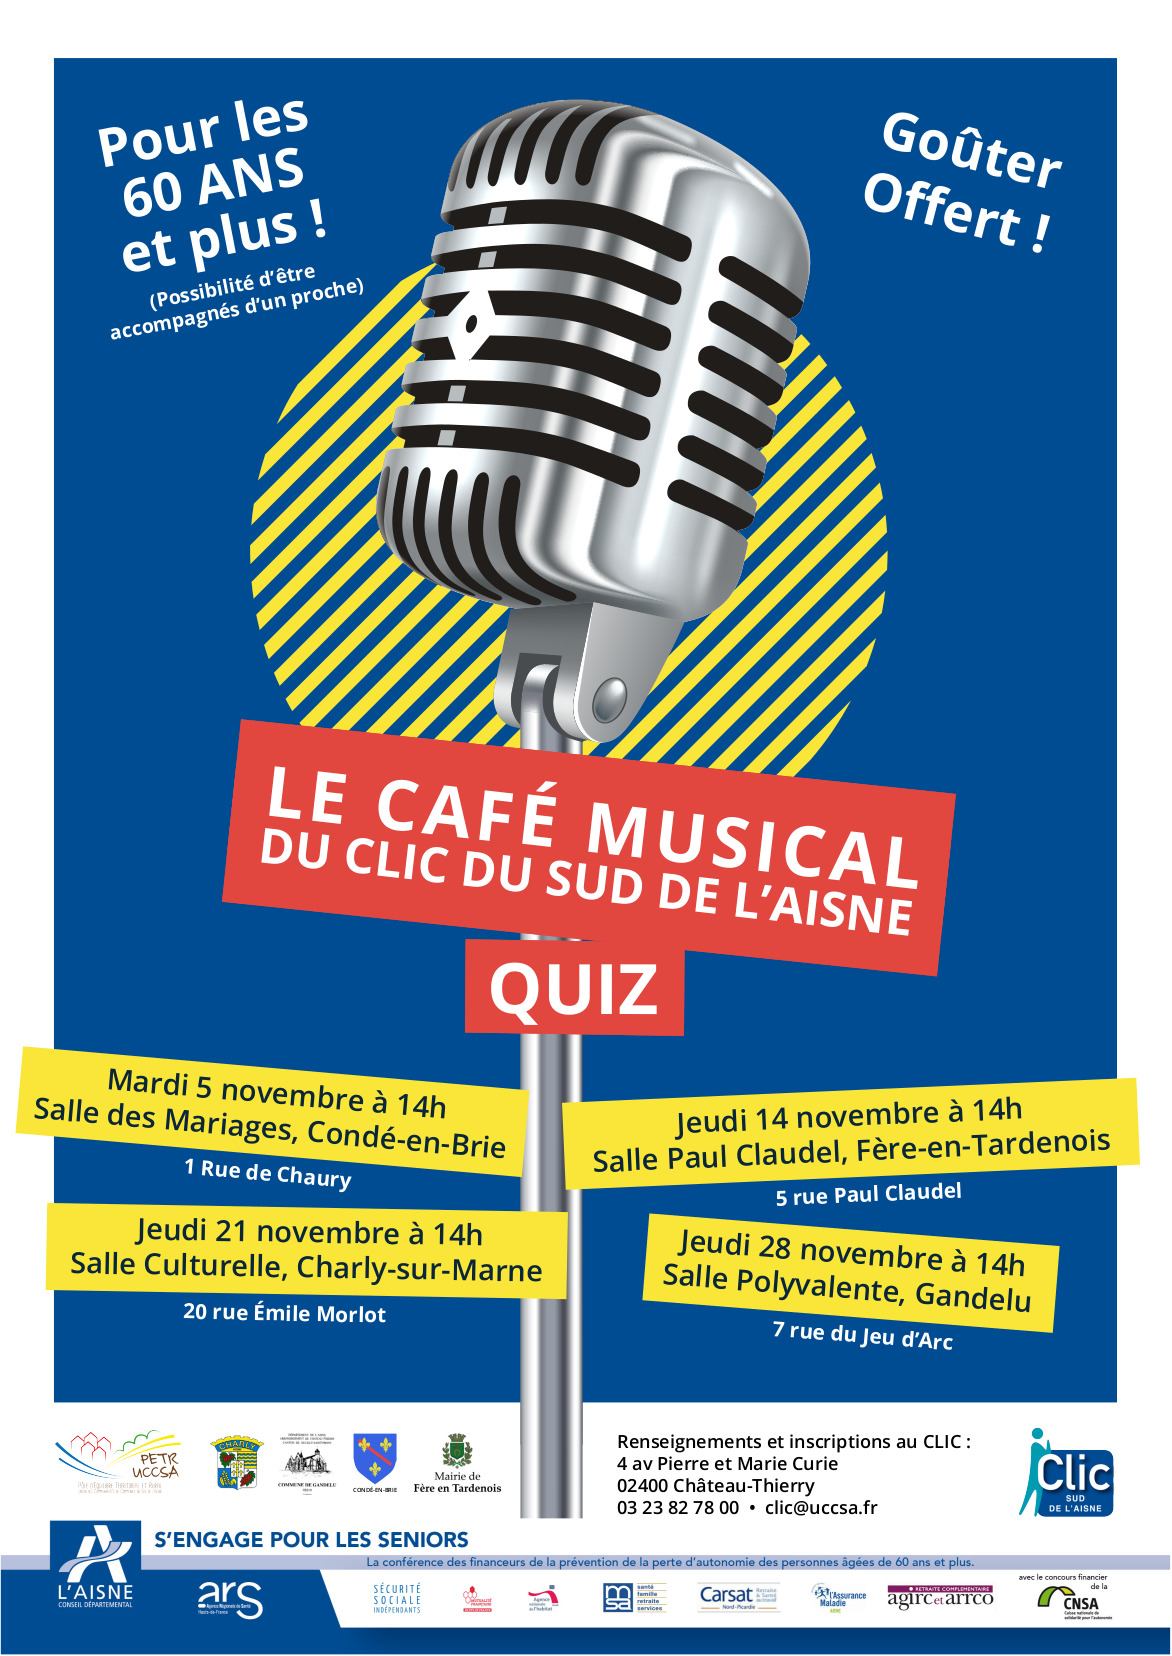 Café musical du Clic du sud de l'Aisne